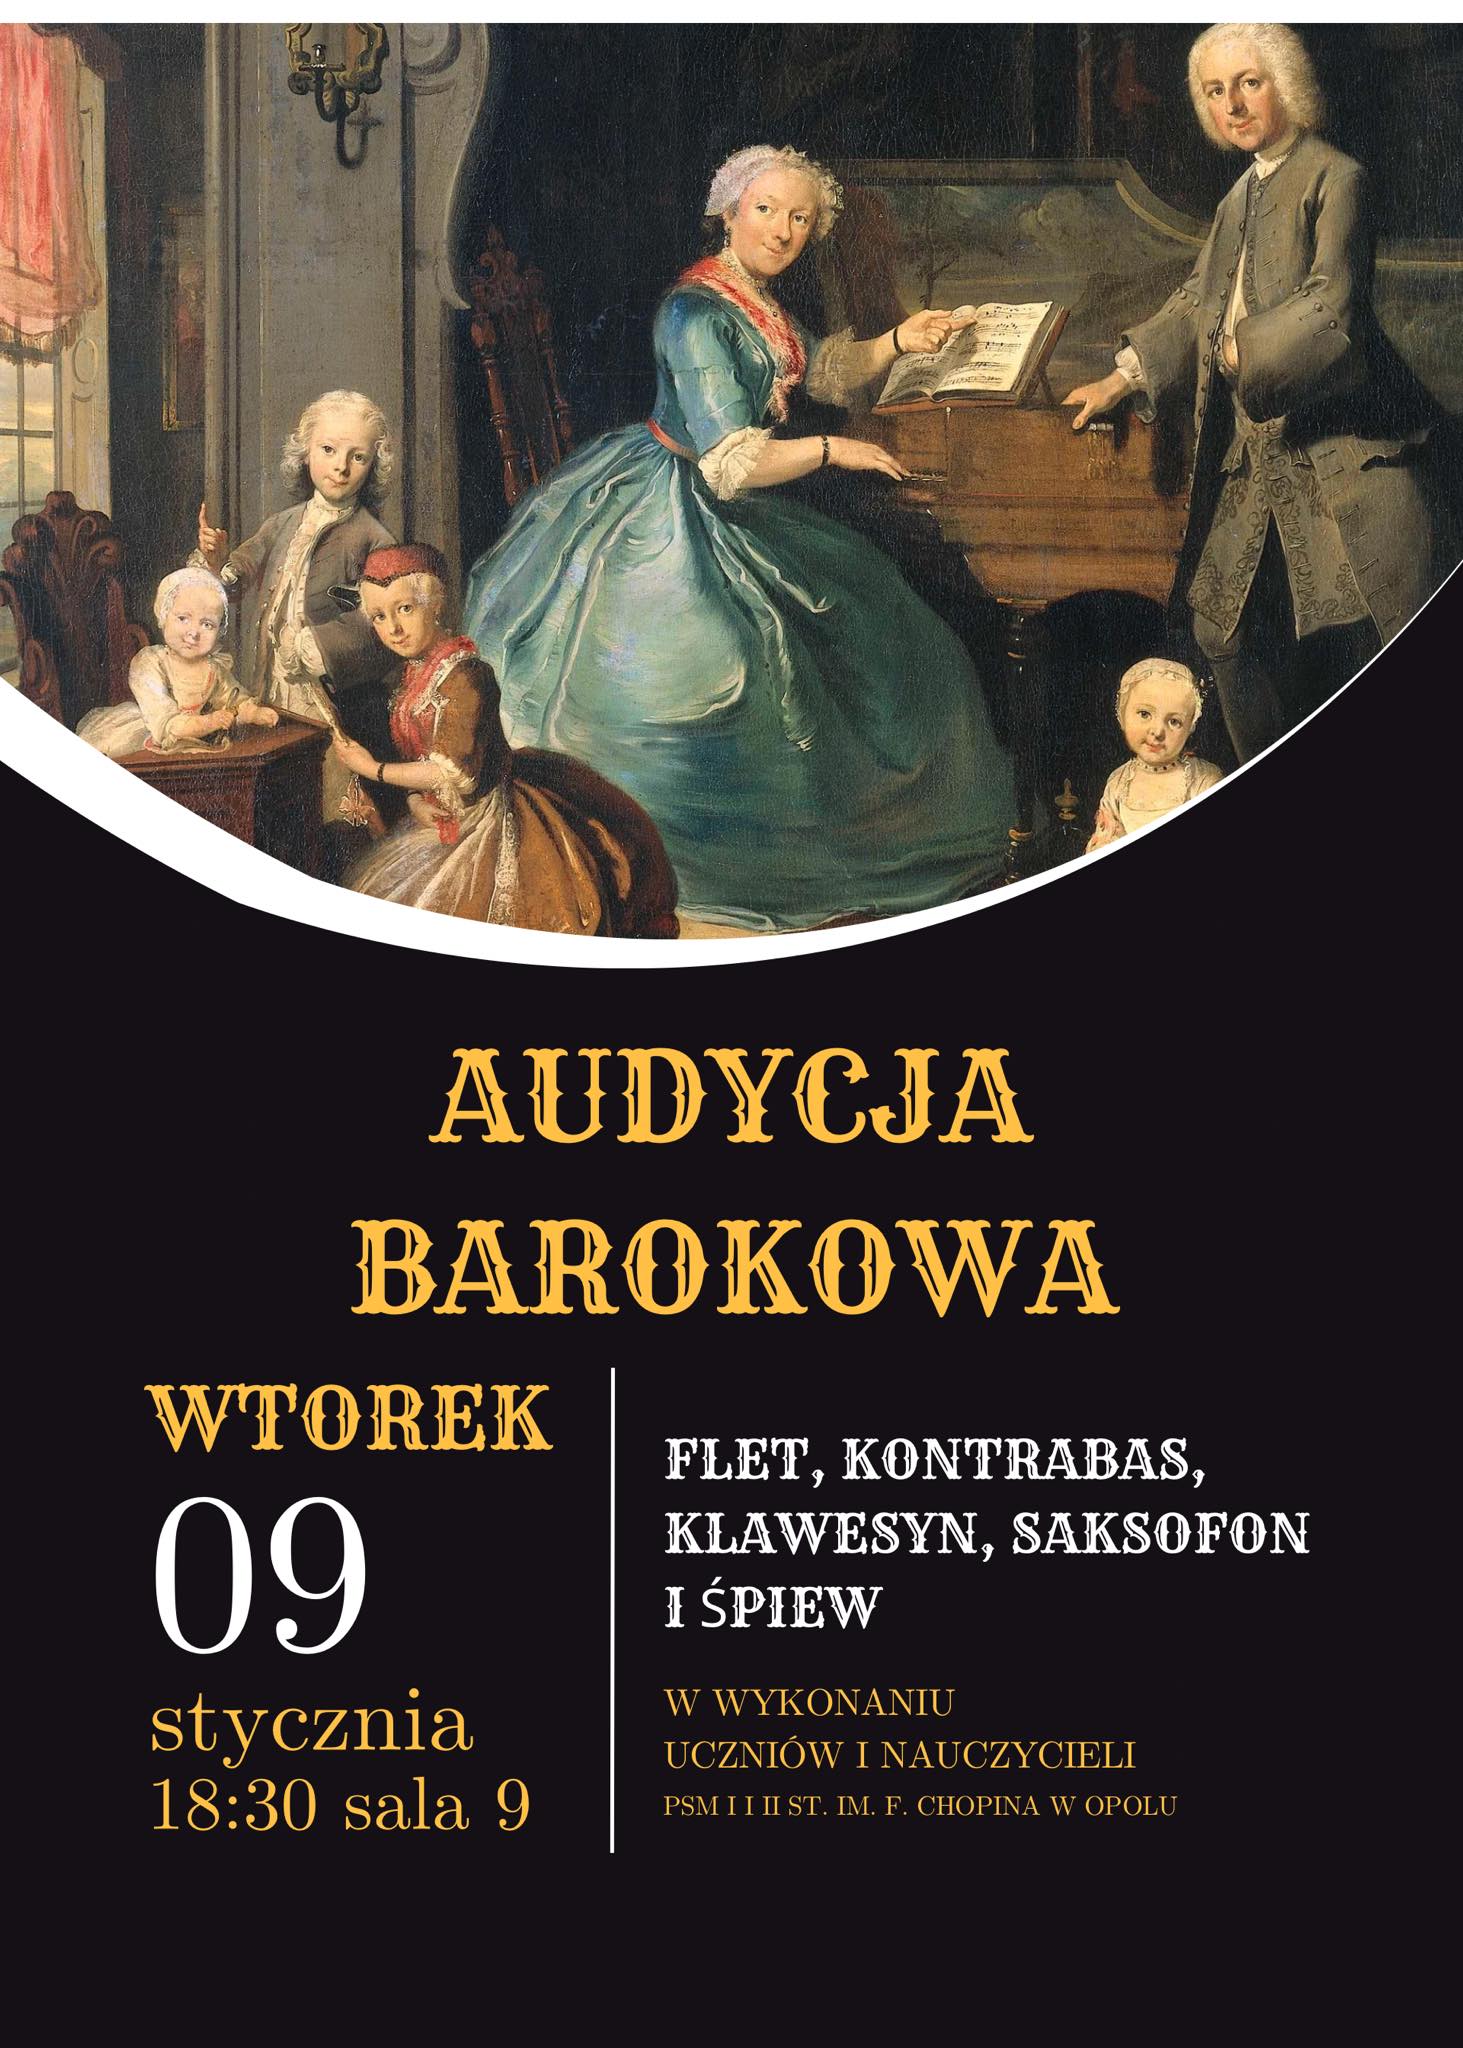 Plakat audycji barokowej